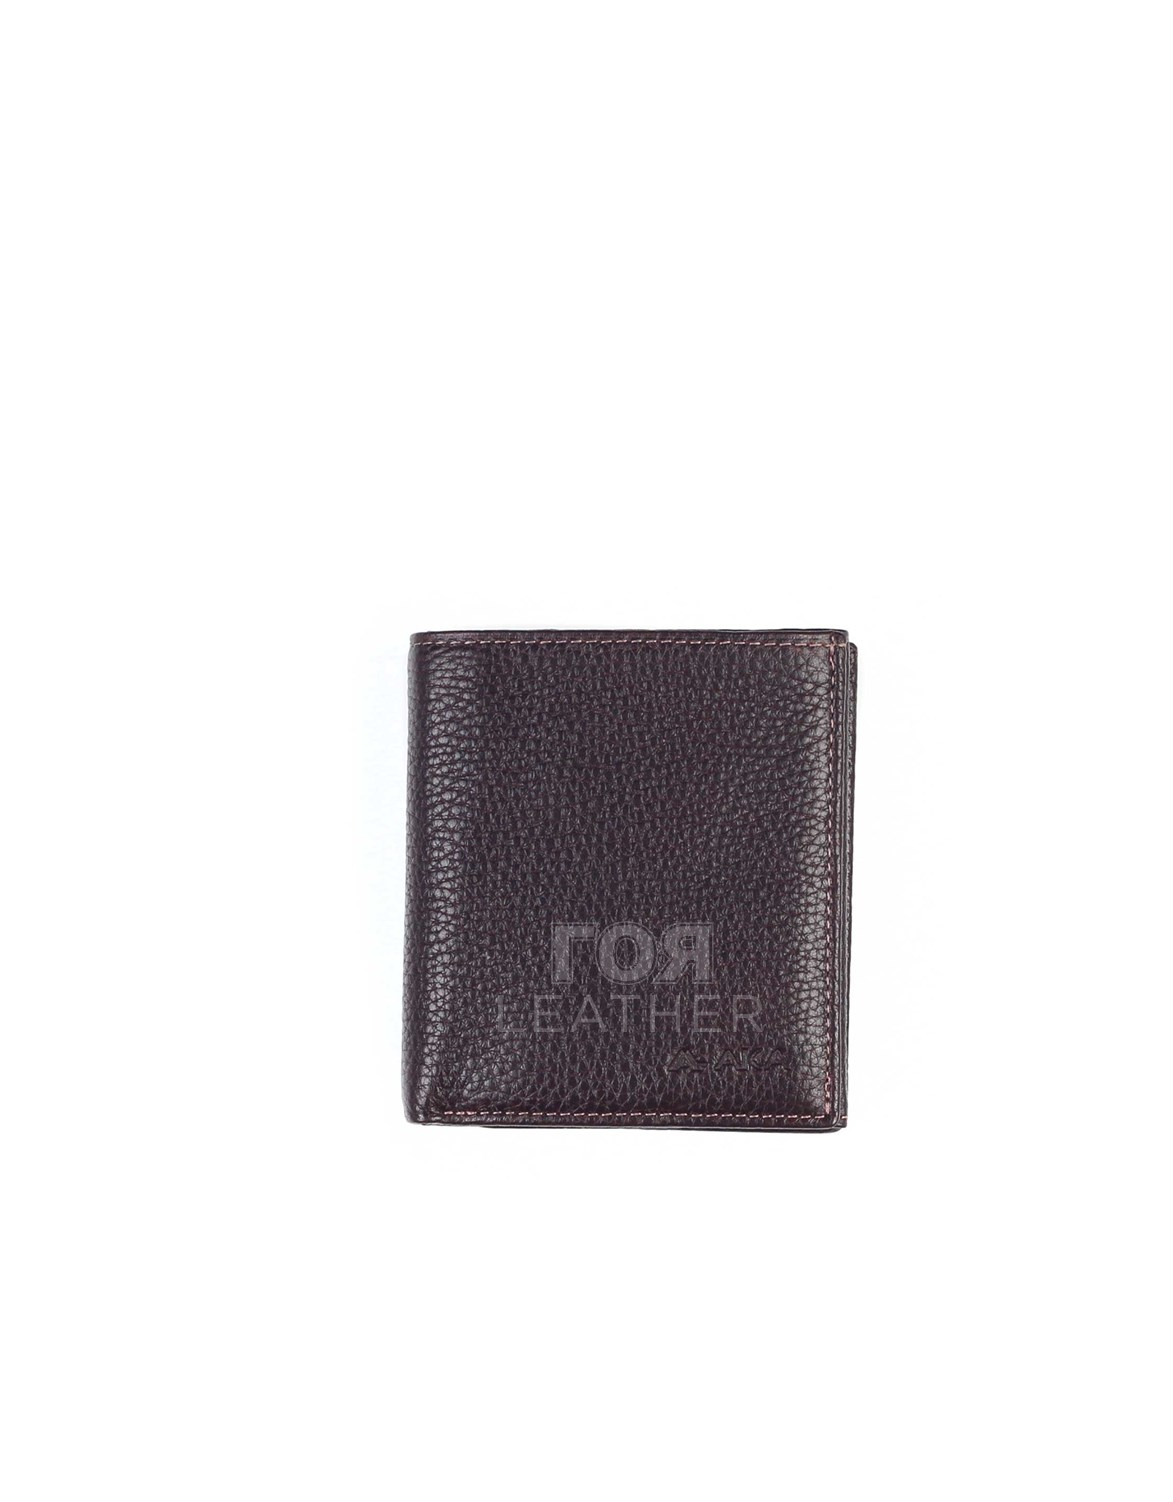 Мъжки кожен портфейл, модел AKA - 543 от ГОЯ Leather. Продуктът е ръчно изработен от 100% естествена телешка кожа и не съдържа никакви вредни за здравето активни вещества.